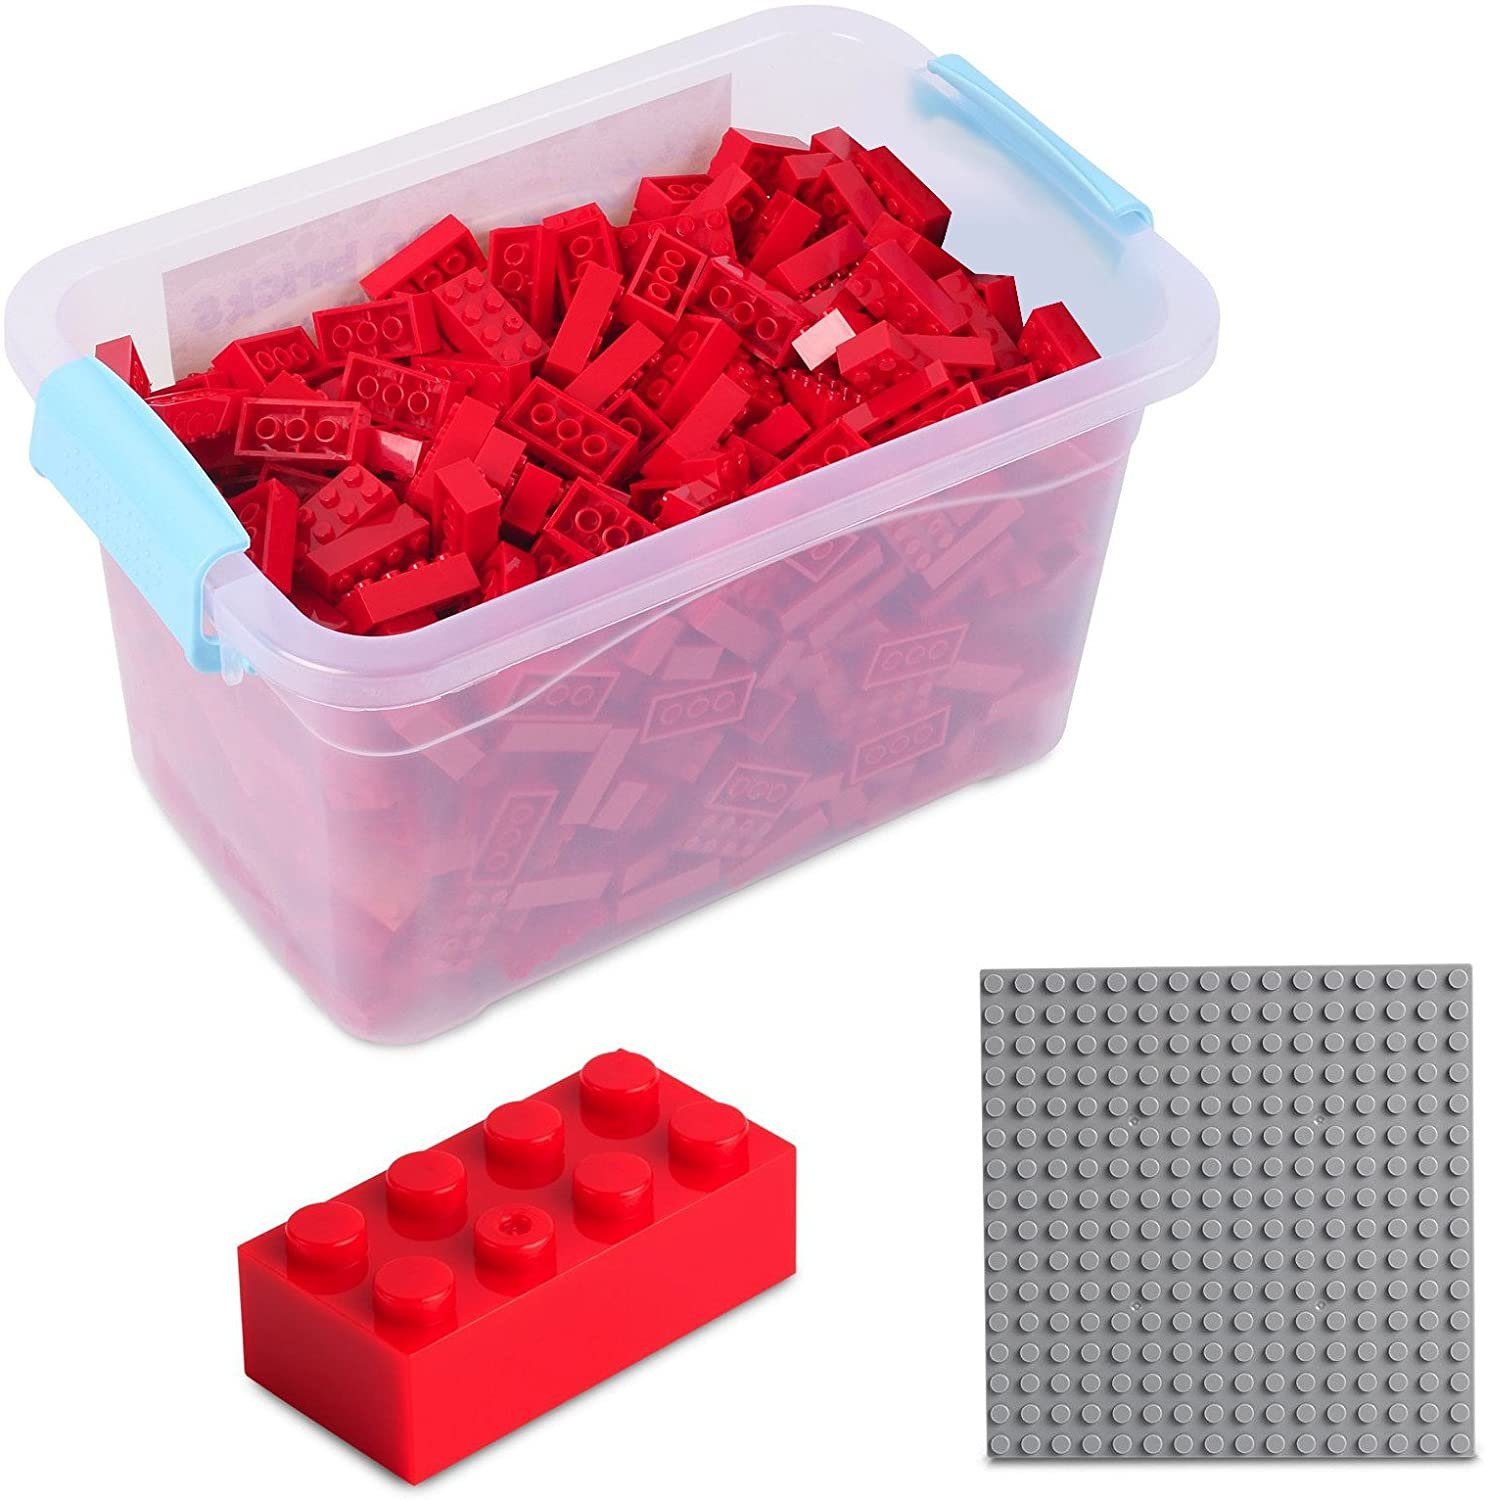 Katara Konstruktionsspielsteine Bausteine Box-Set mit 520 Steinen + Platte + Box, (3er Set), Kompatibel zu allen Anderen Herstellern - verschiedene Farben rot